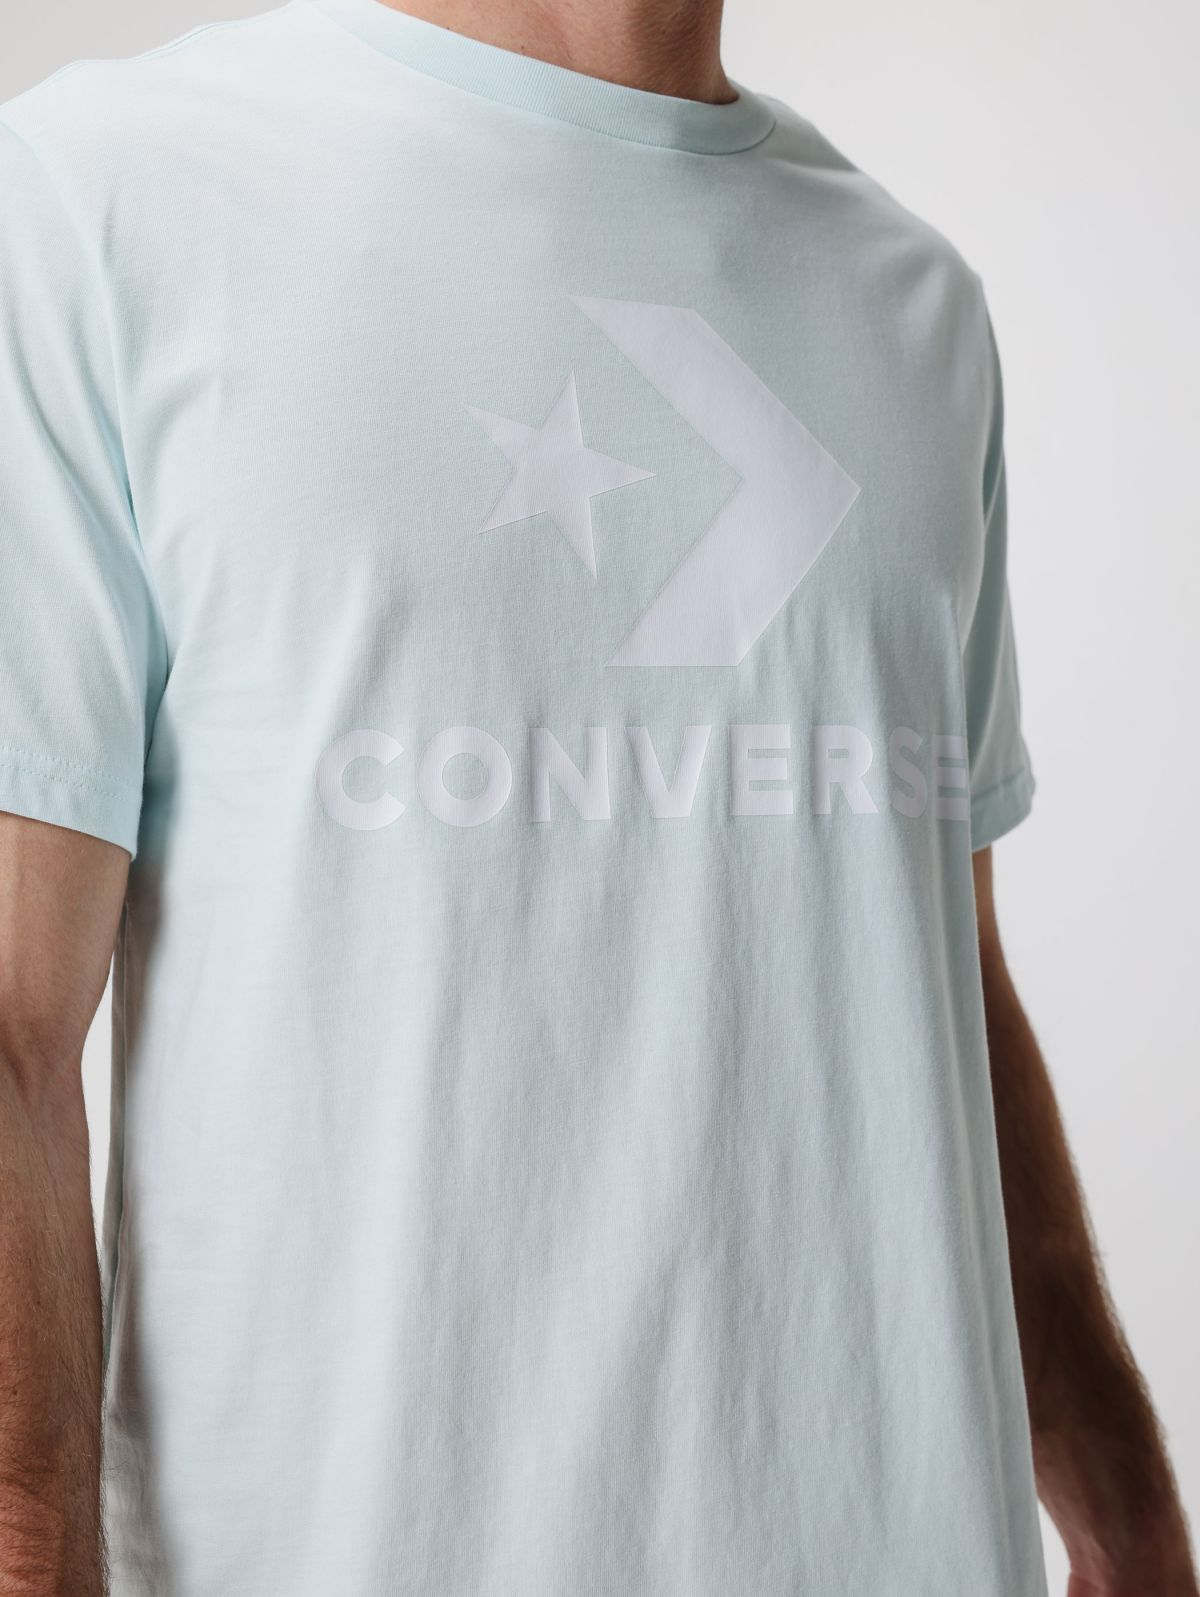  טישירט עם הדפס לוגו של CONVERSE